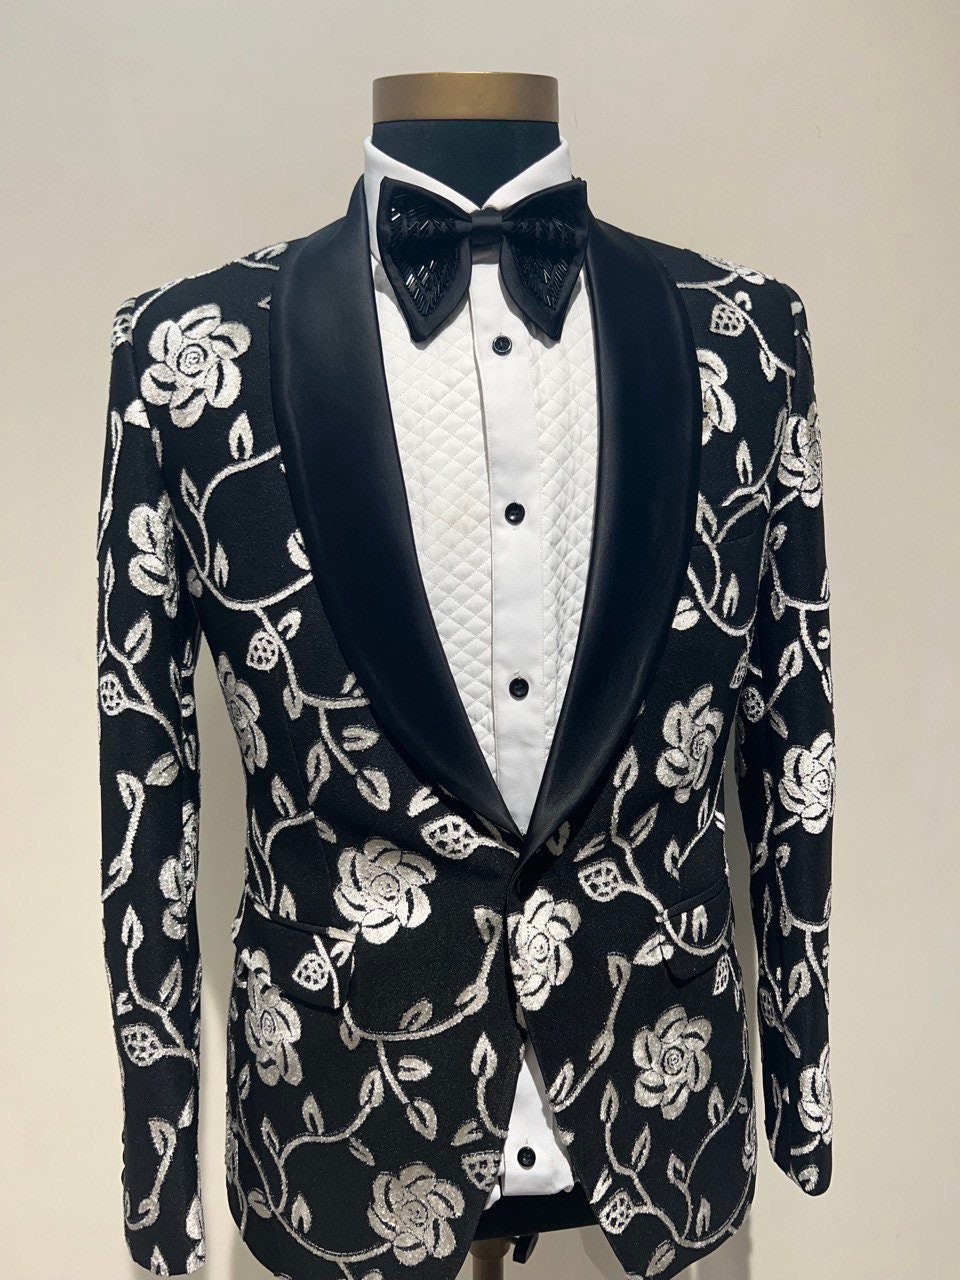 CUSTOM MADE Fancy Tuxedo Suit for Men Wedding Wear Tuxedo - Etsy